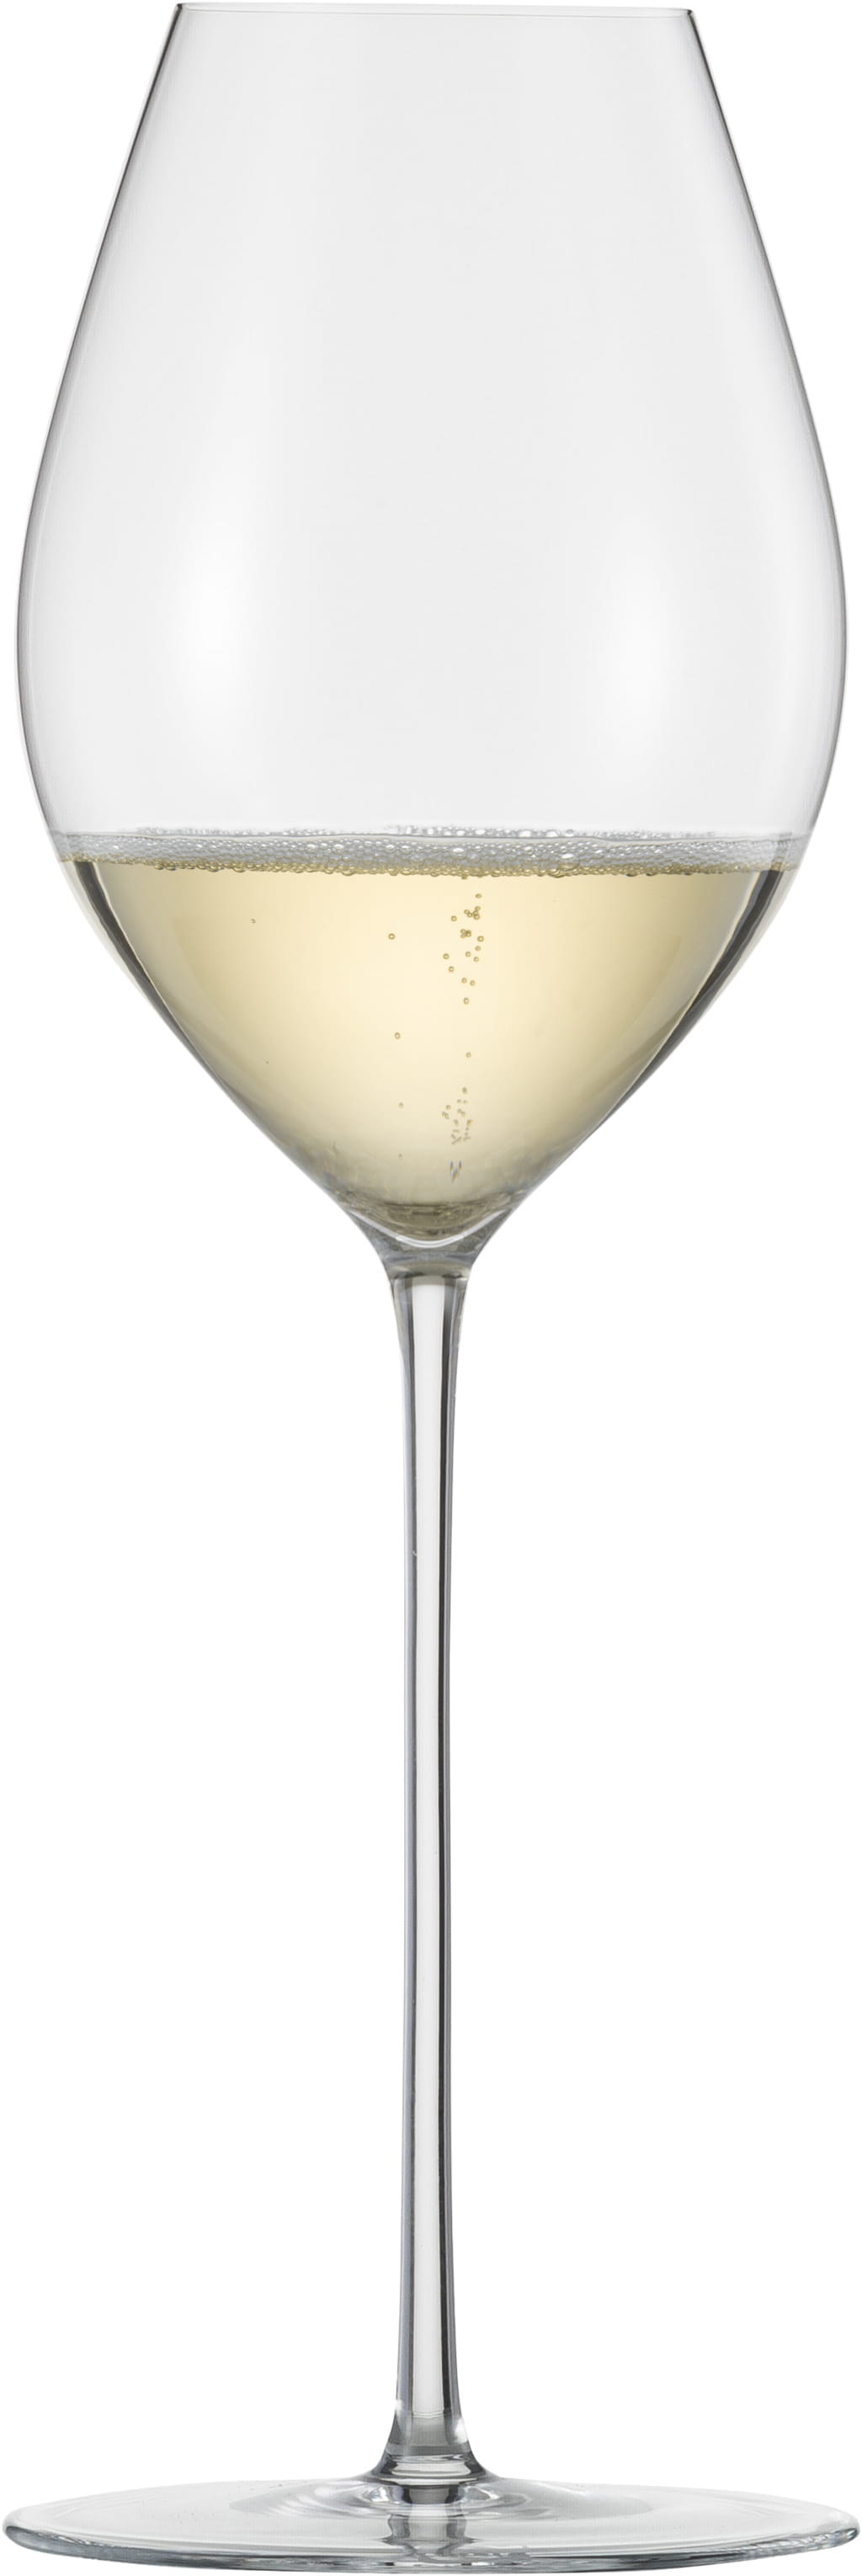 Eisch Glas Unity Sensis plus Champagnerglas 522/7 mit Moussierpunkt